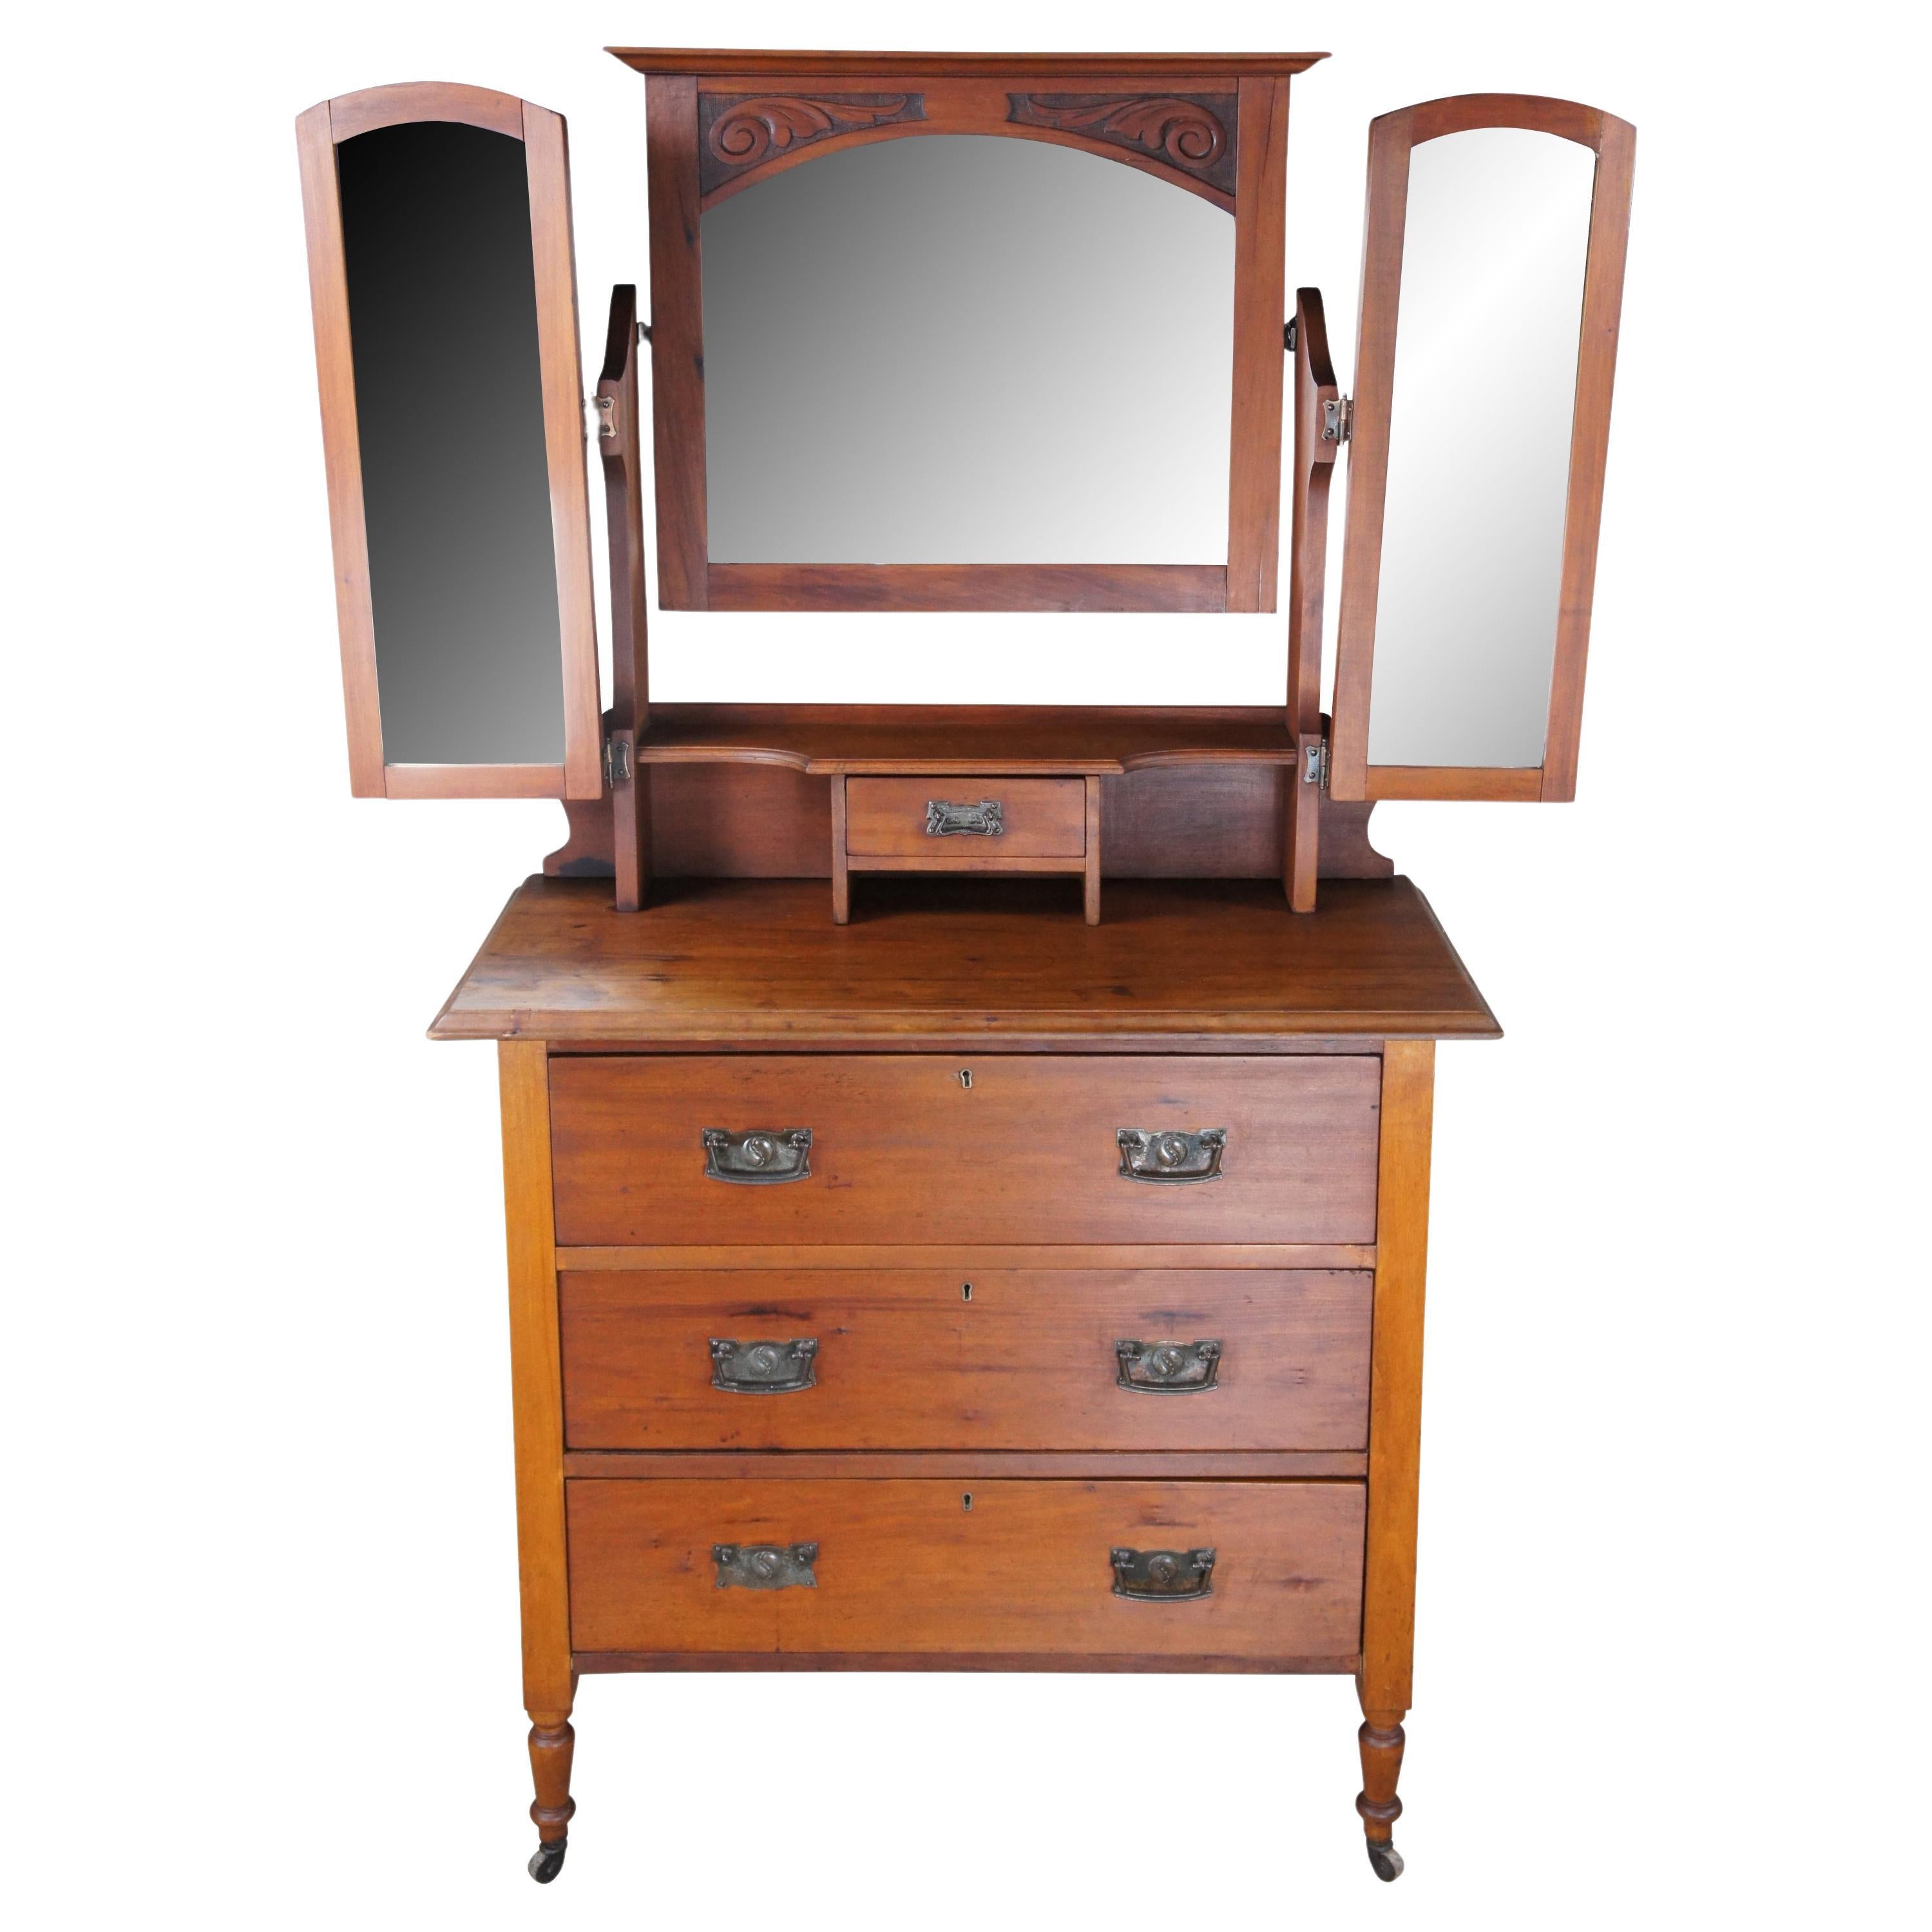 Antique Victorian Eastlake Walnut Tri Mirrored Vanity Dresser Shaving Stand 65"